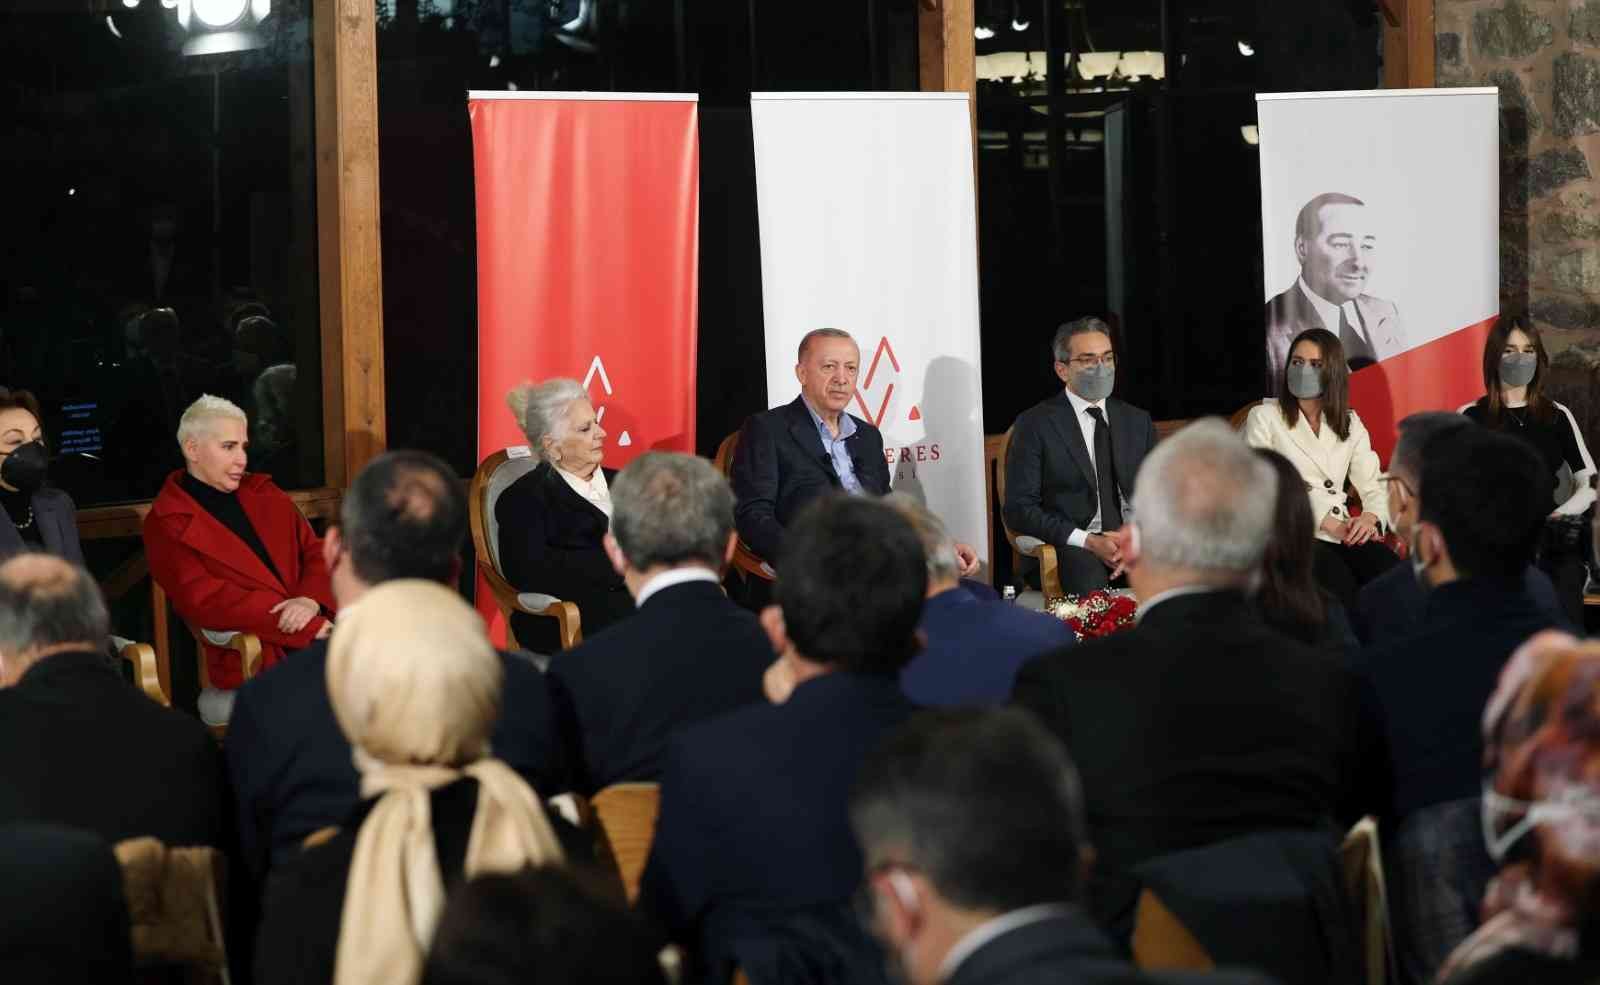 Cumhurbaşkanı Erdoğan: “Müslümanın kitabında korkmak yazmaz” #aydin